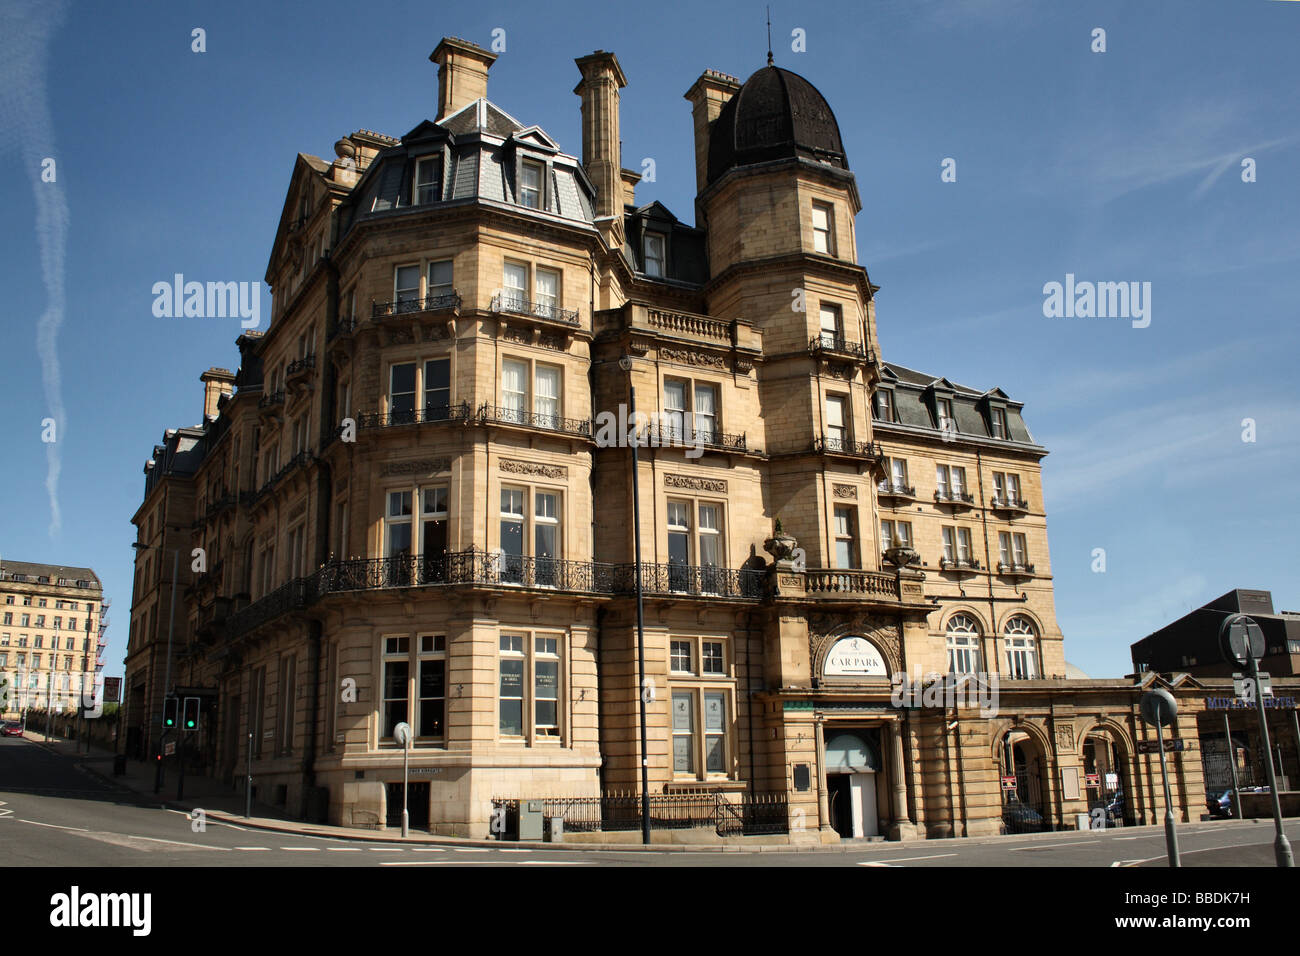 Midland Hotel Bradford Yorkshire tiene características de considerable interés arquitectónico. asociado con ferrocarril Midland Foto de stock